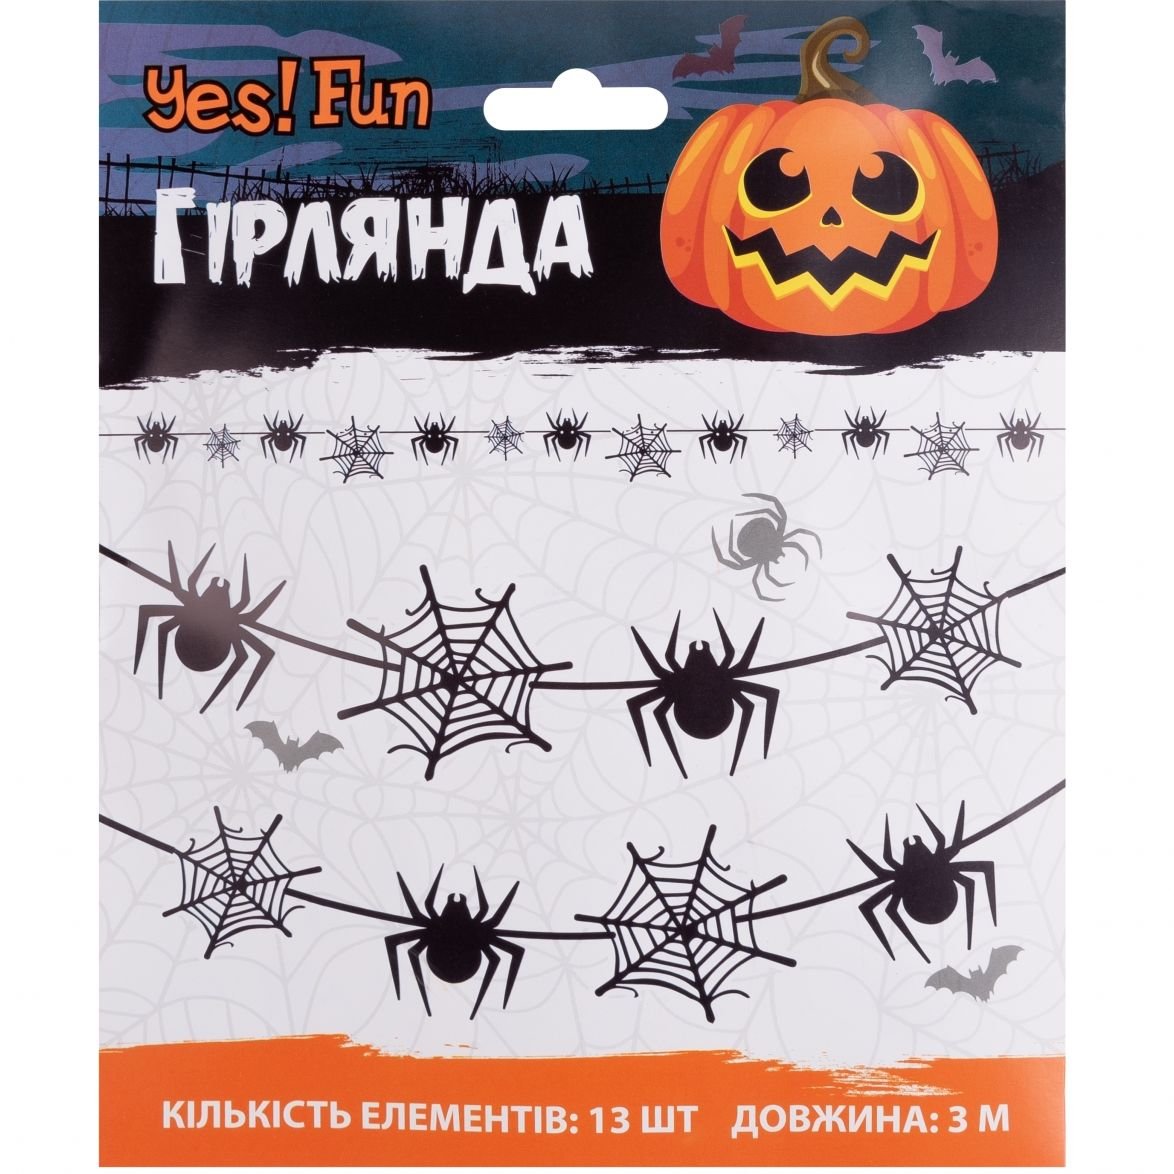 Гирлянда бумажная фигурная Yes! Fun Halloween Spider Webs, 3 м (801182) - фото 2